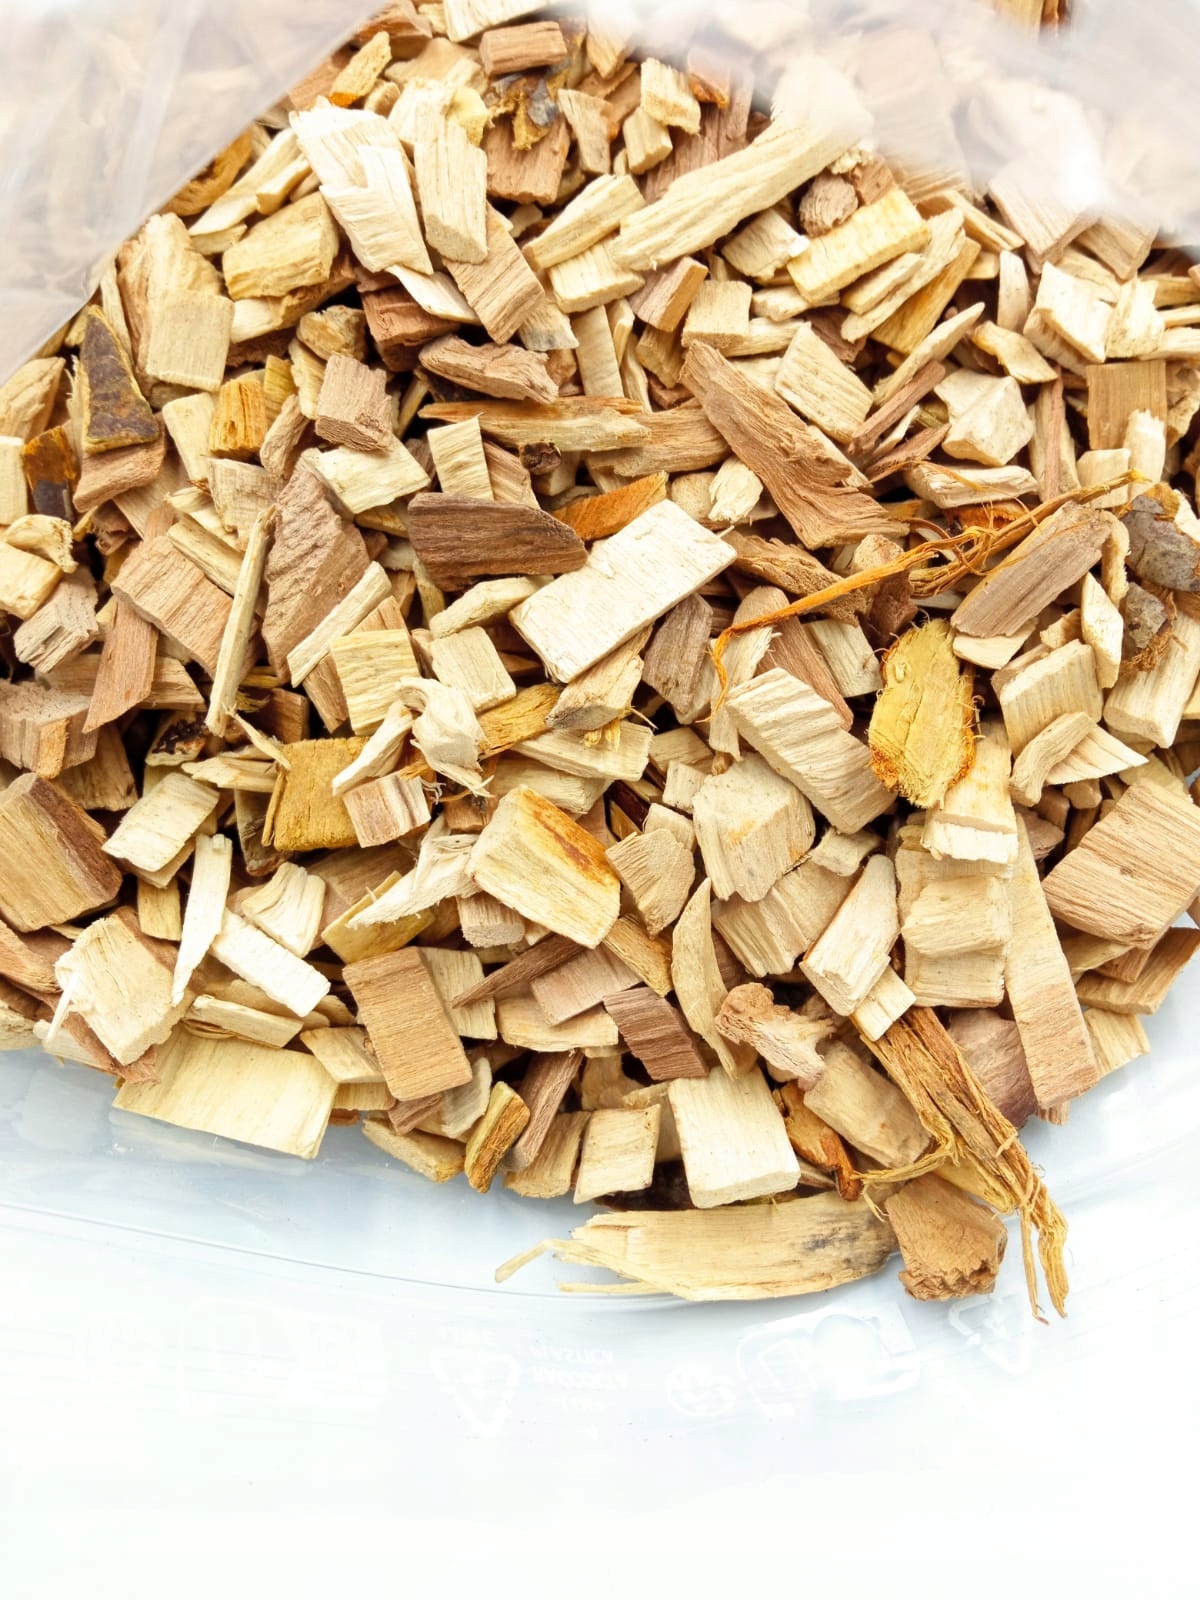 ZRĘBKI WĘDZARNICZE JABŁOŃ Bez Dodatków Chemicznych Naturalne Drewno 4 L 1kg Producent inna